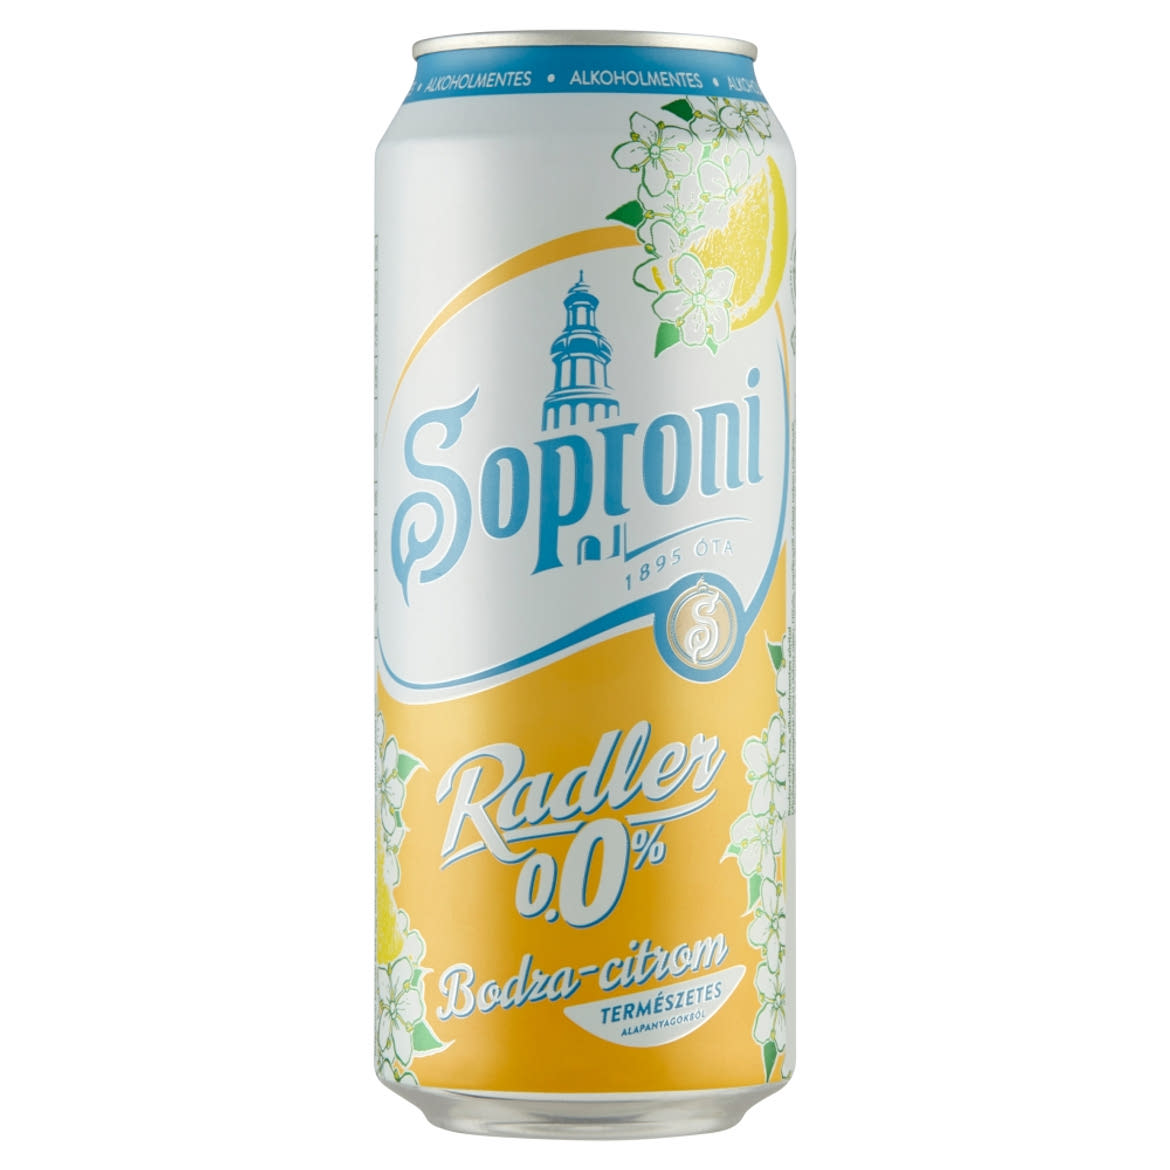 Soproni Radler bodza-citromos alkoholmentes sörital 0,5 l doboz